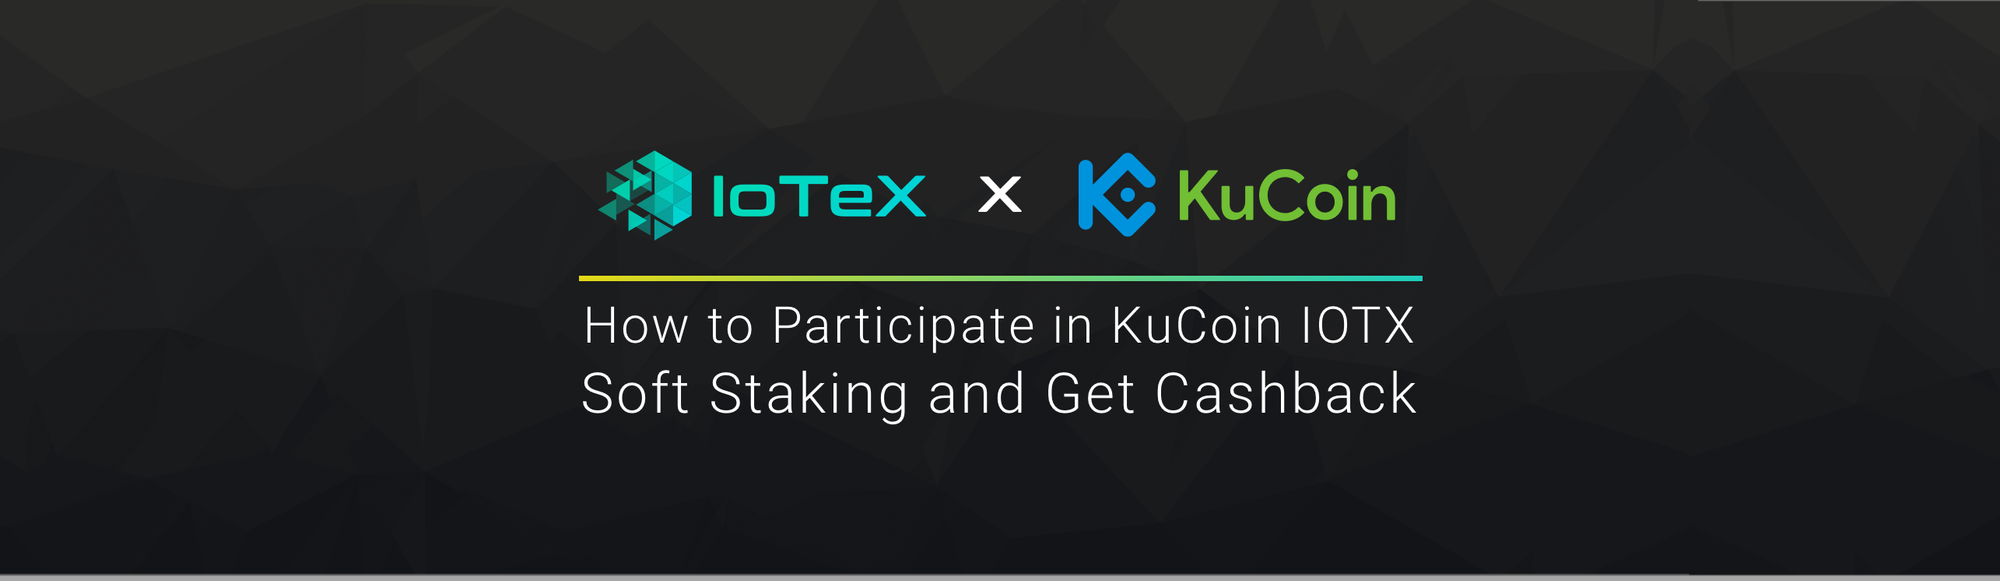 kucoin-iotx-soft-staking